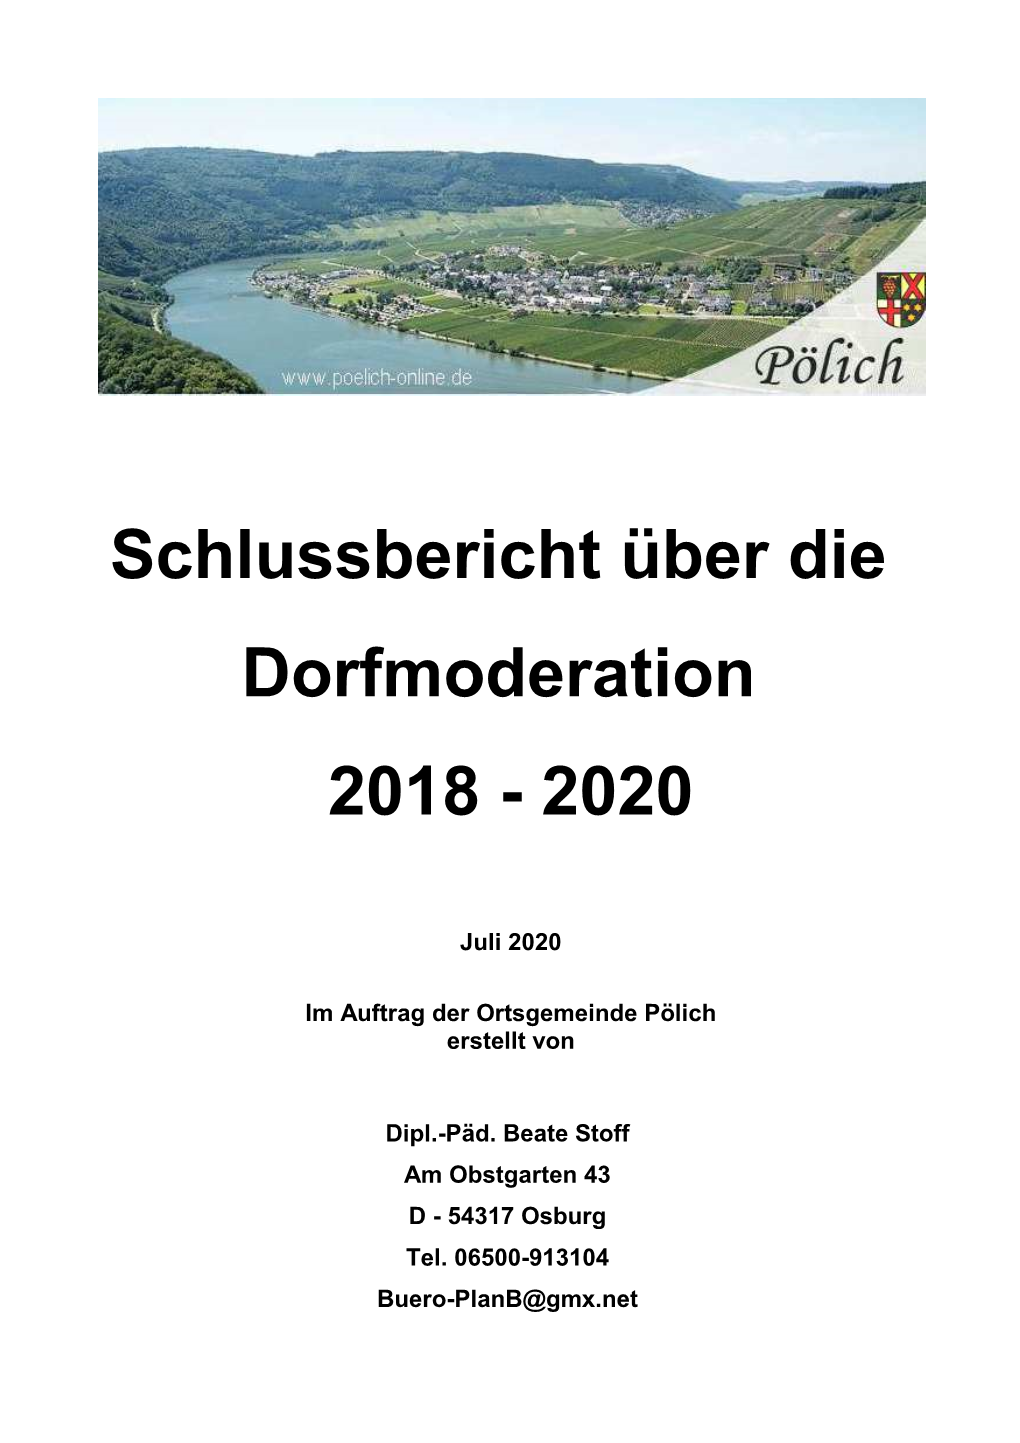 Schlussbericht Über Die Dorfmoderation 2018 - 2020